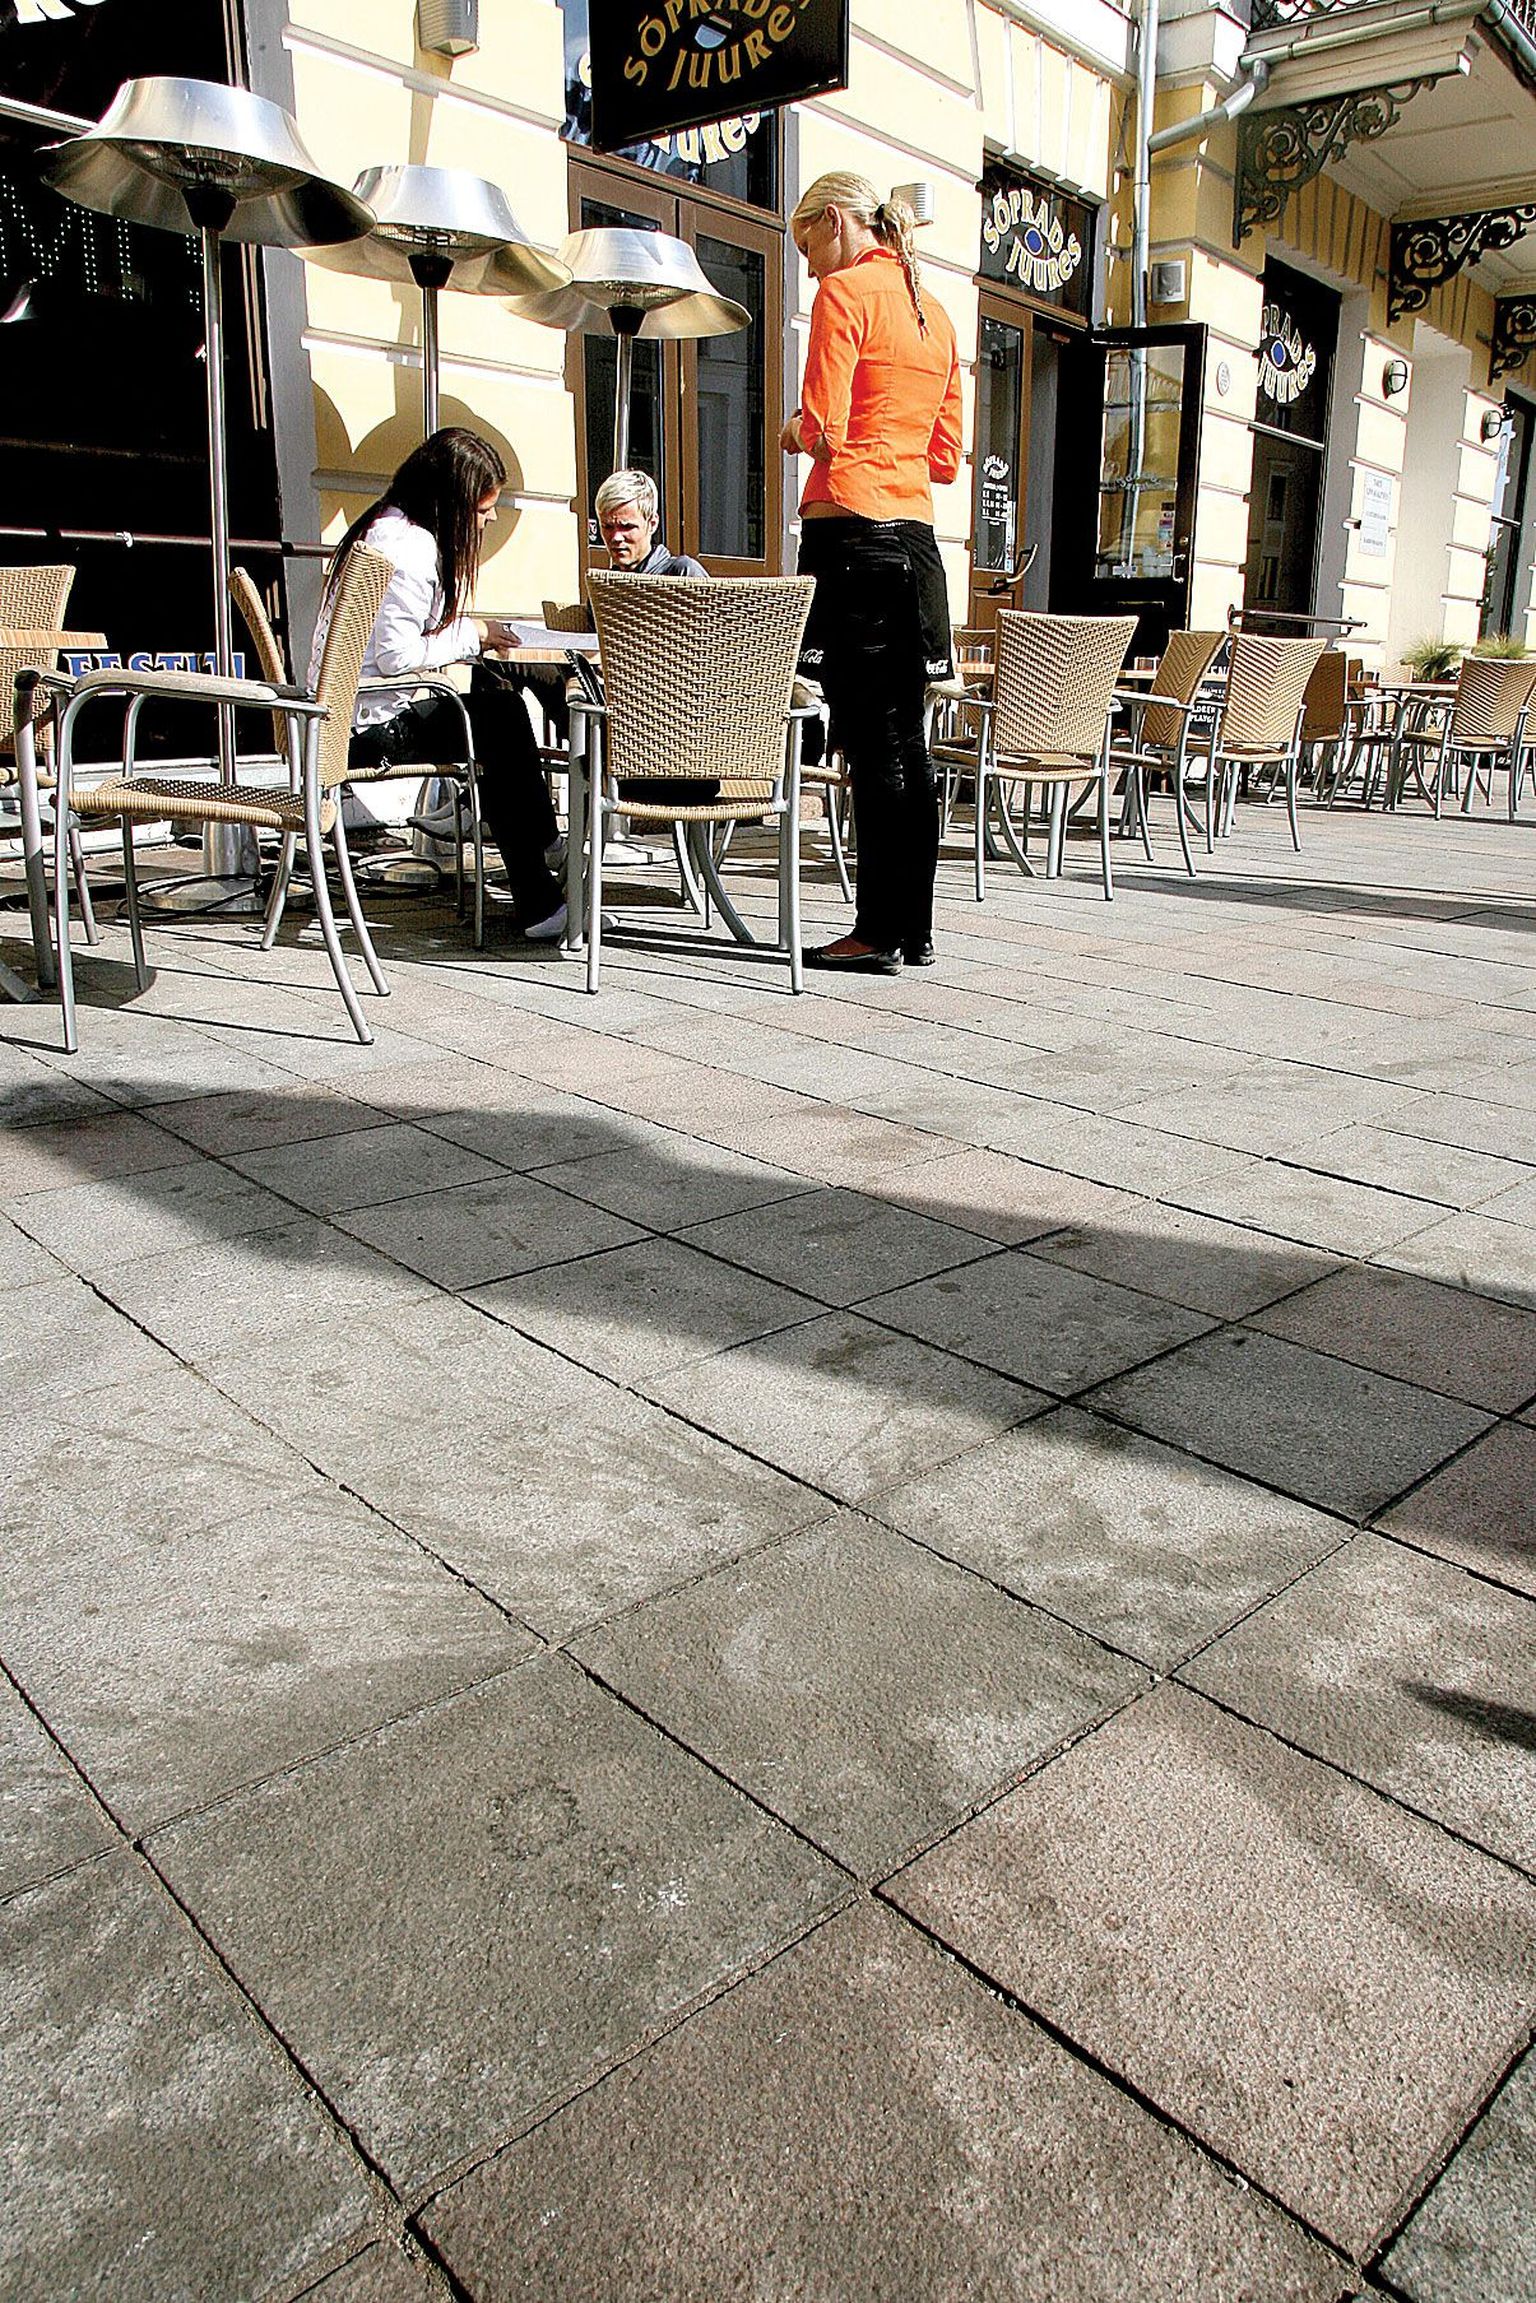 Raeplatsi õuekohvikutes on kõnnitee graniitplaatidel arvukalt plekke, kuid nii kohvikupidajad kui ametnikud tunnistavad, et neid ära pesta on väga keeruline.